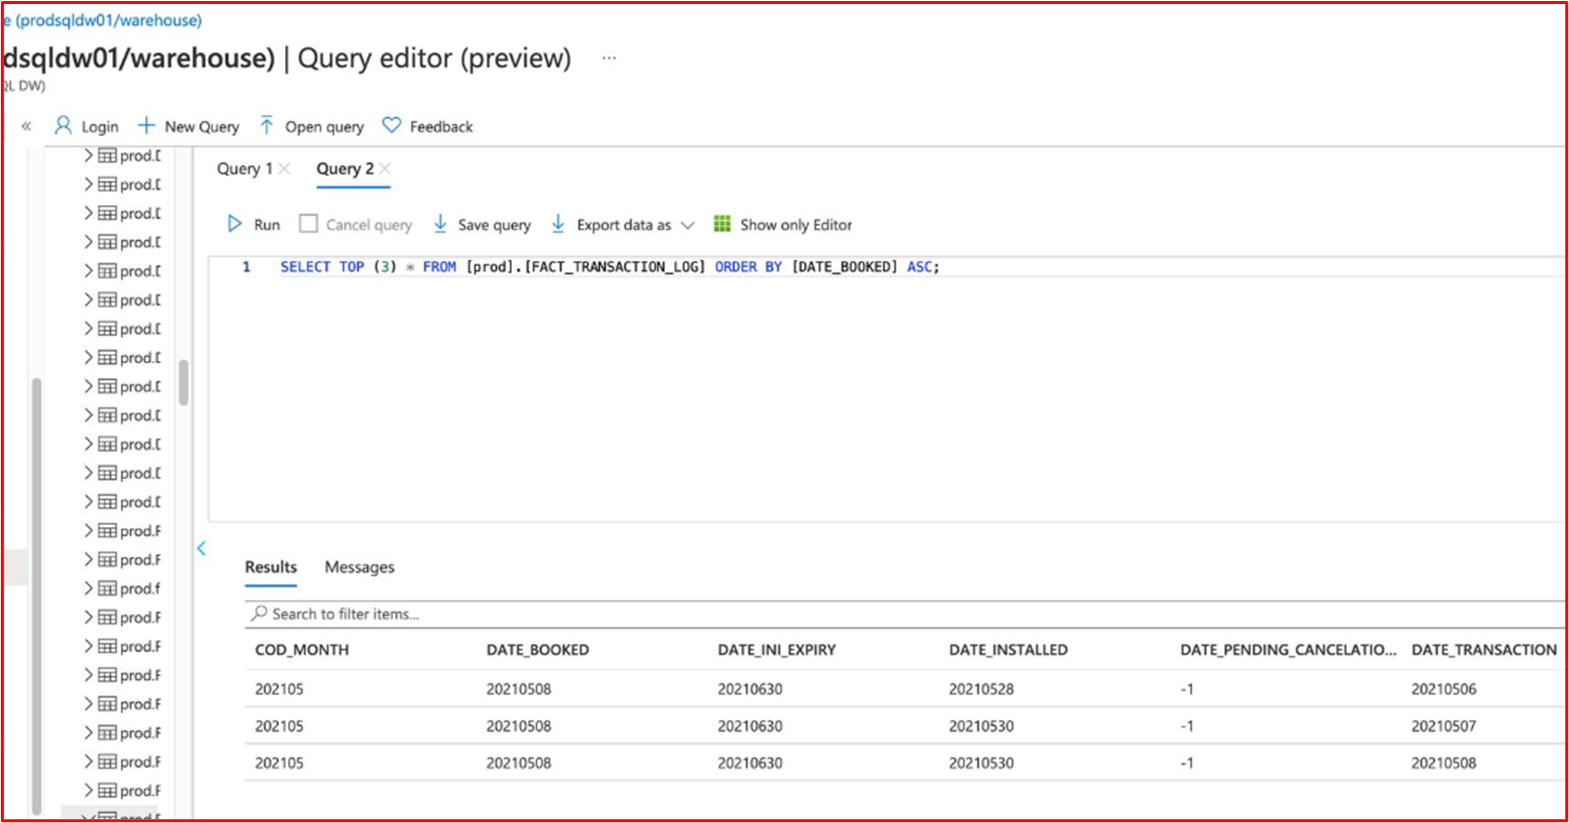 屏幕截图显示了一个 SQL 查询，其中显示了按升序排序的数据库表的内容